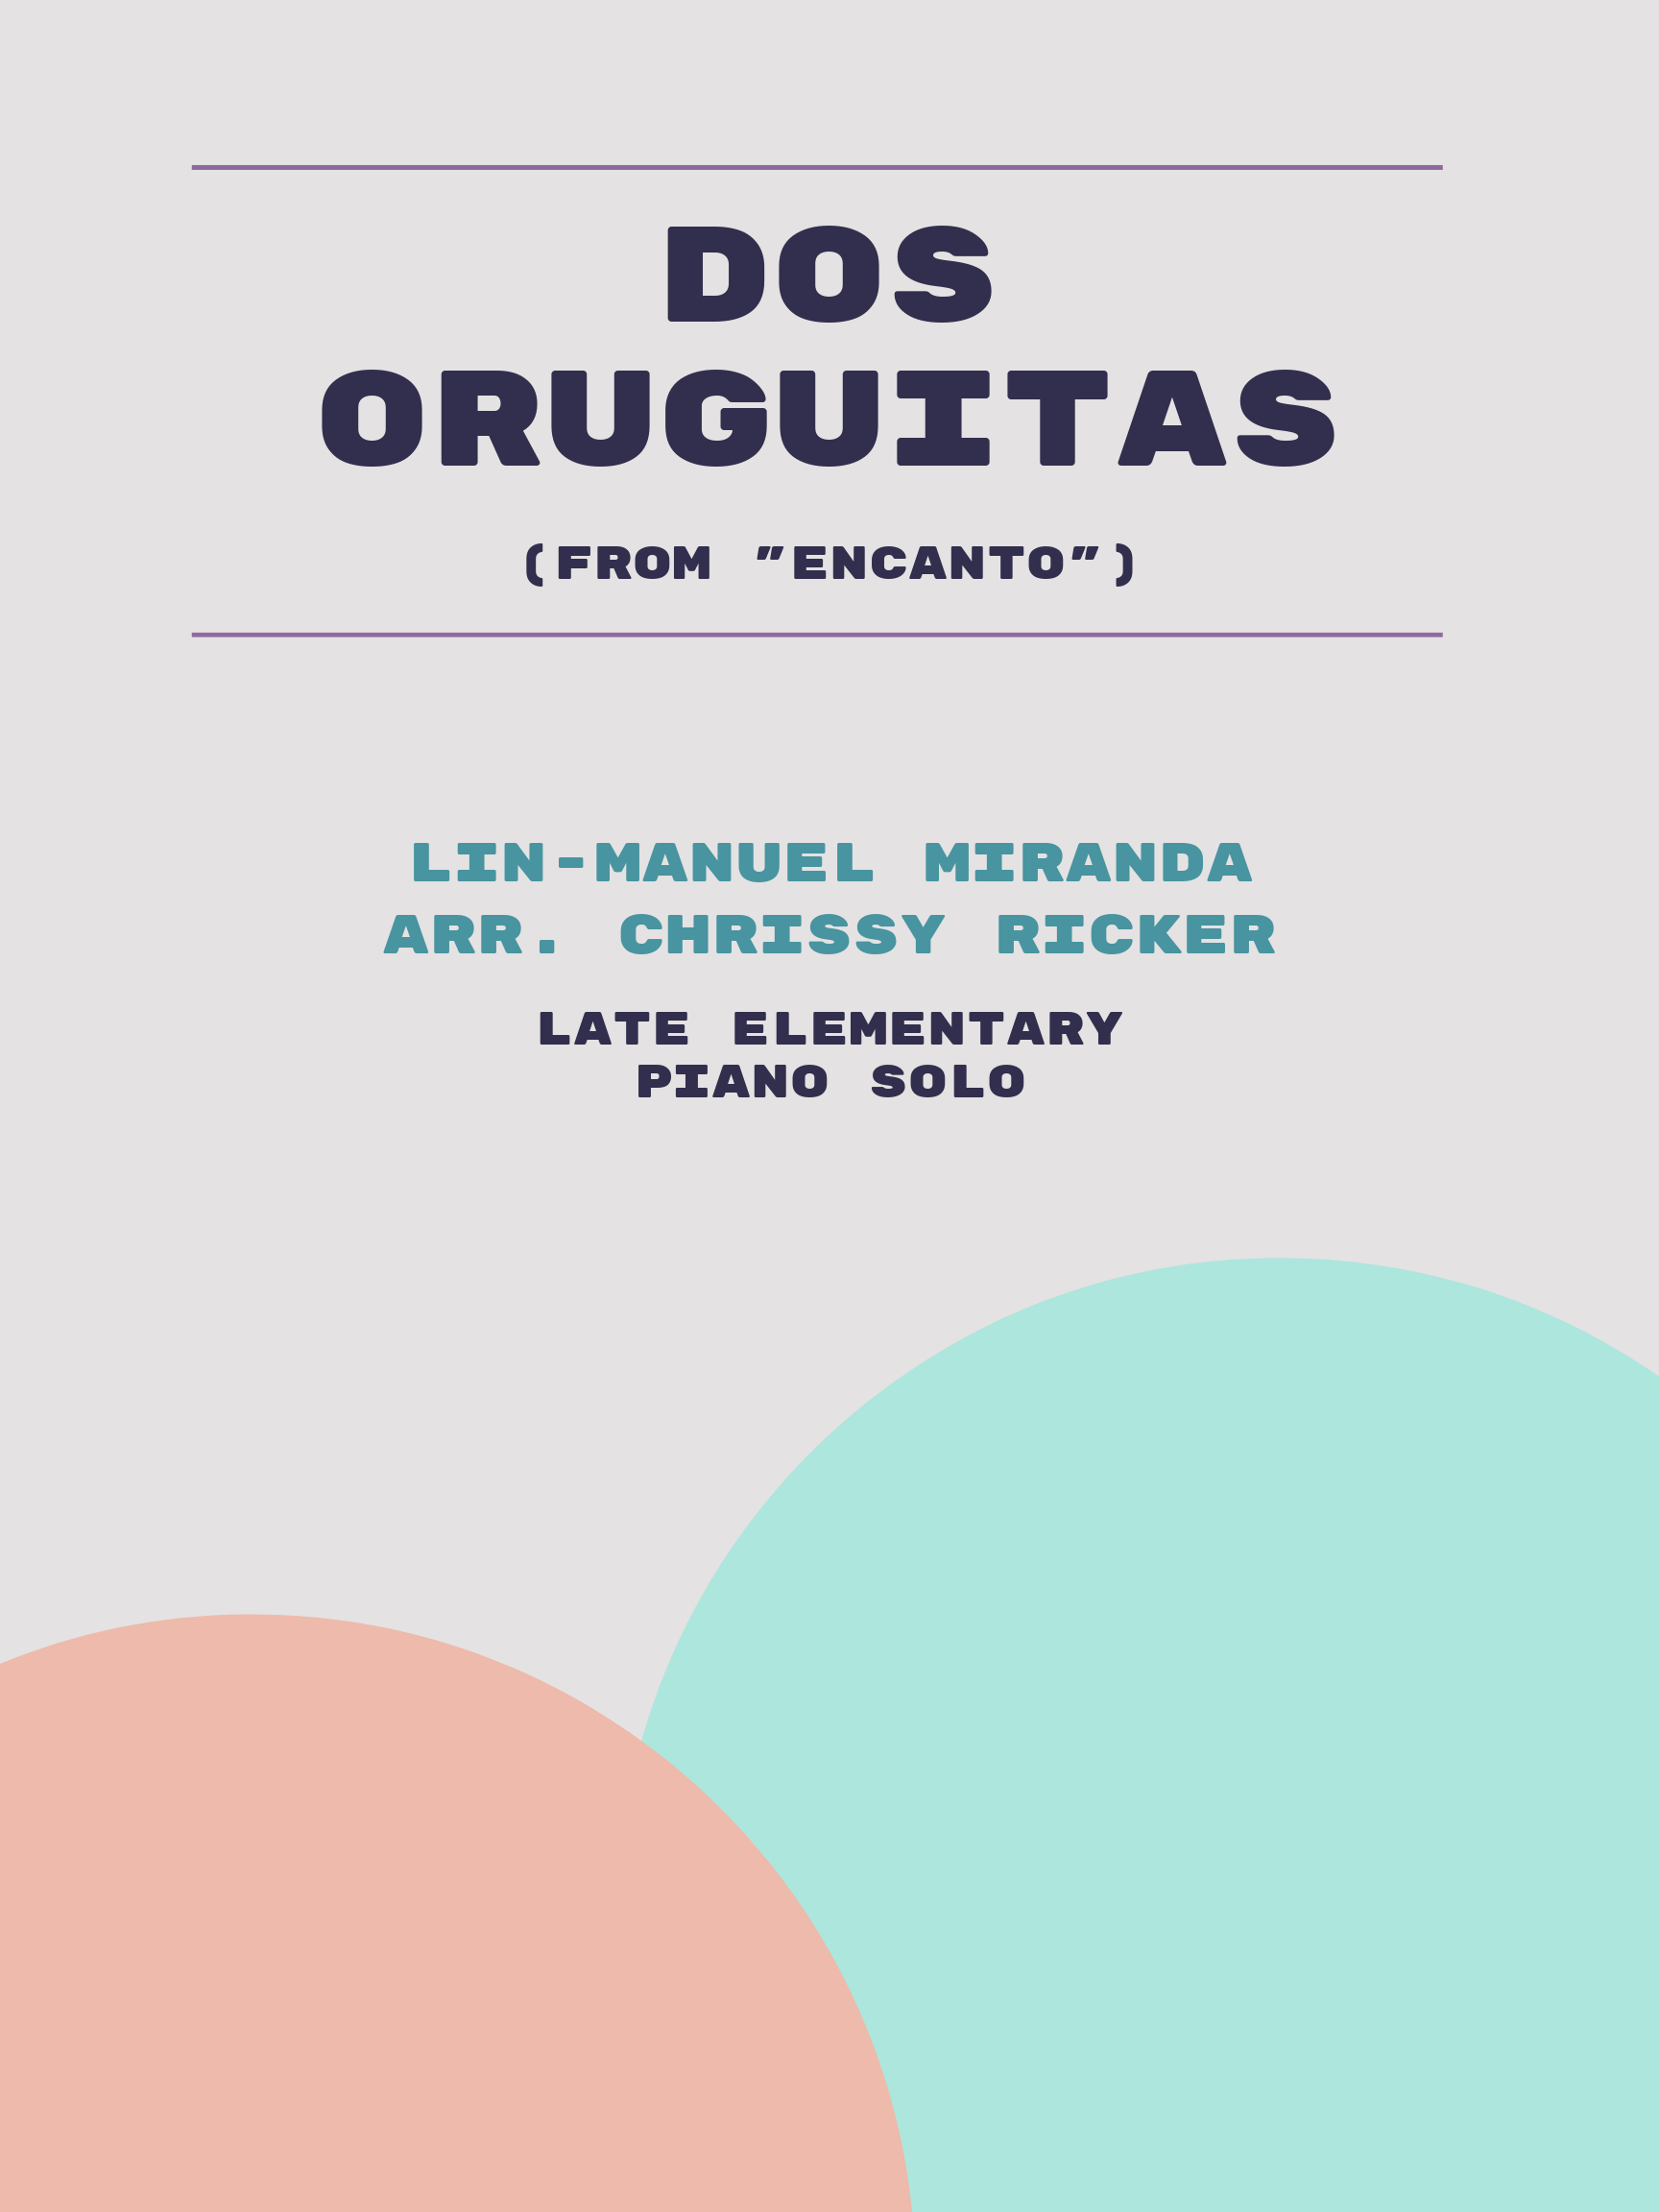 Dos Oruguitas by Lin-Manuel Miranda